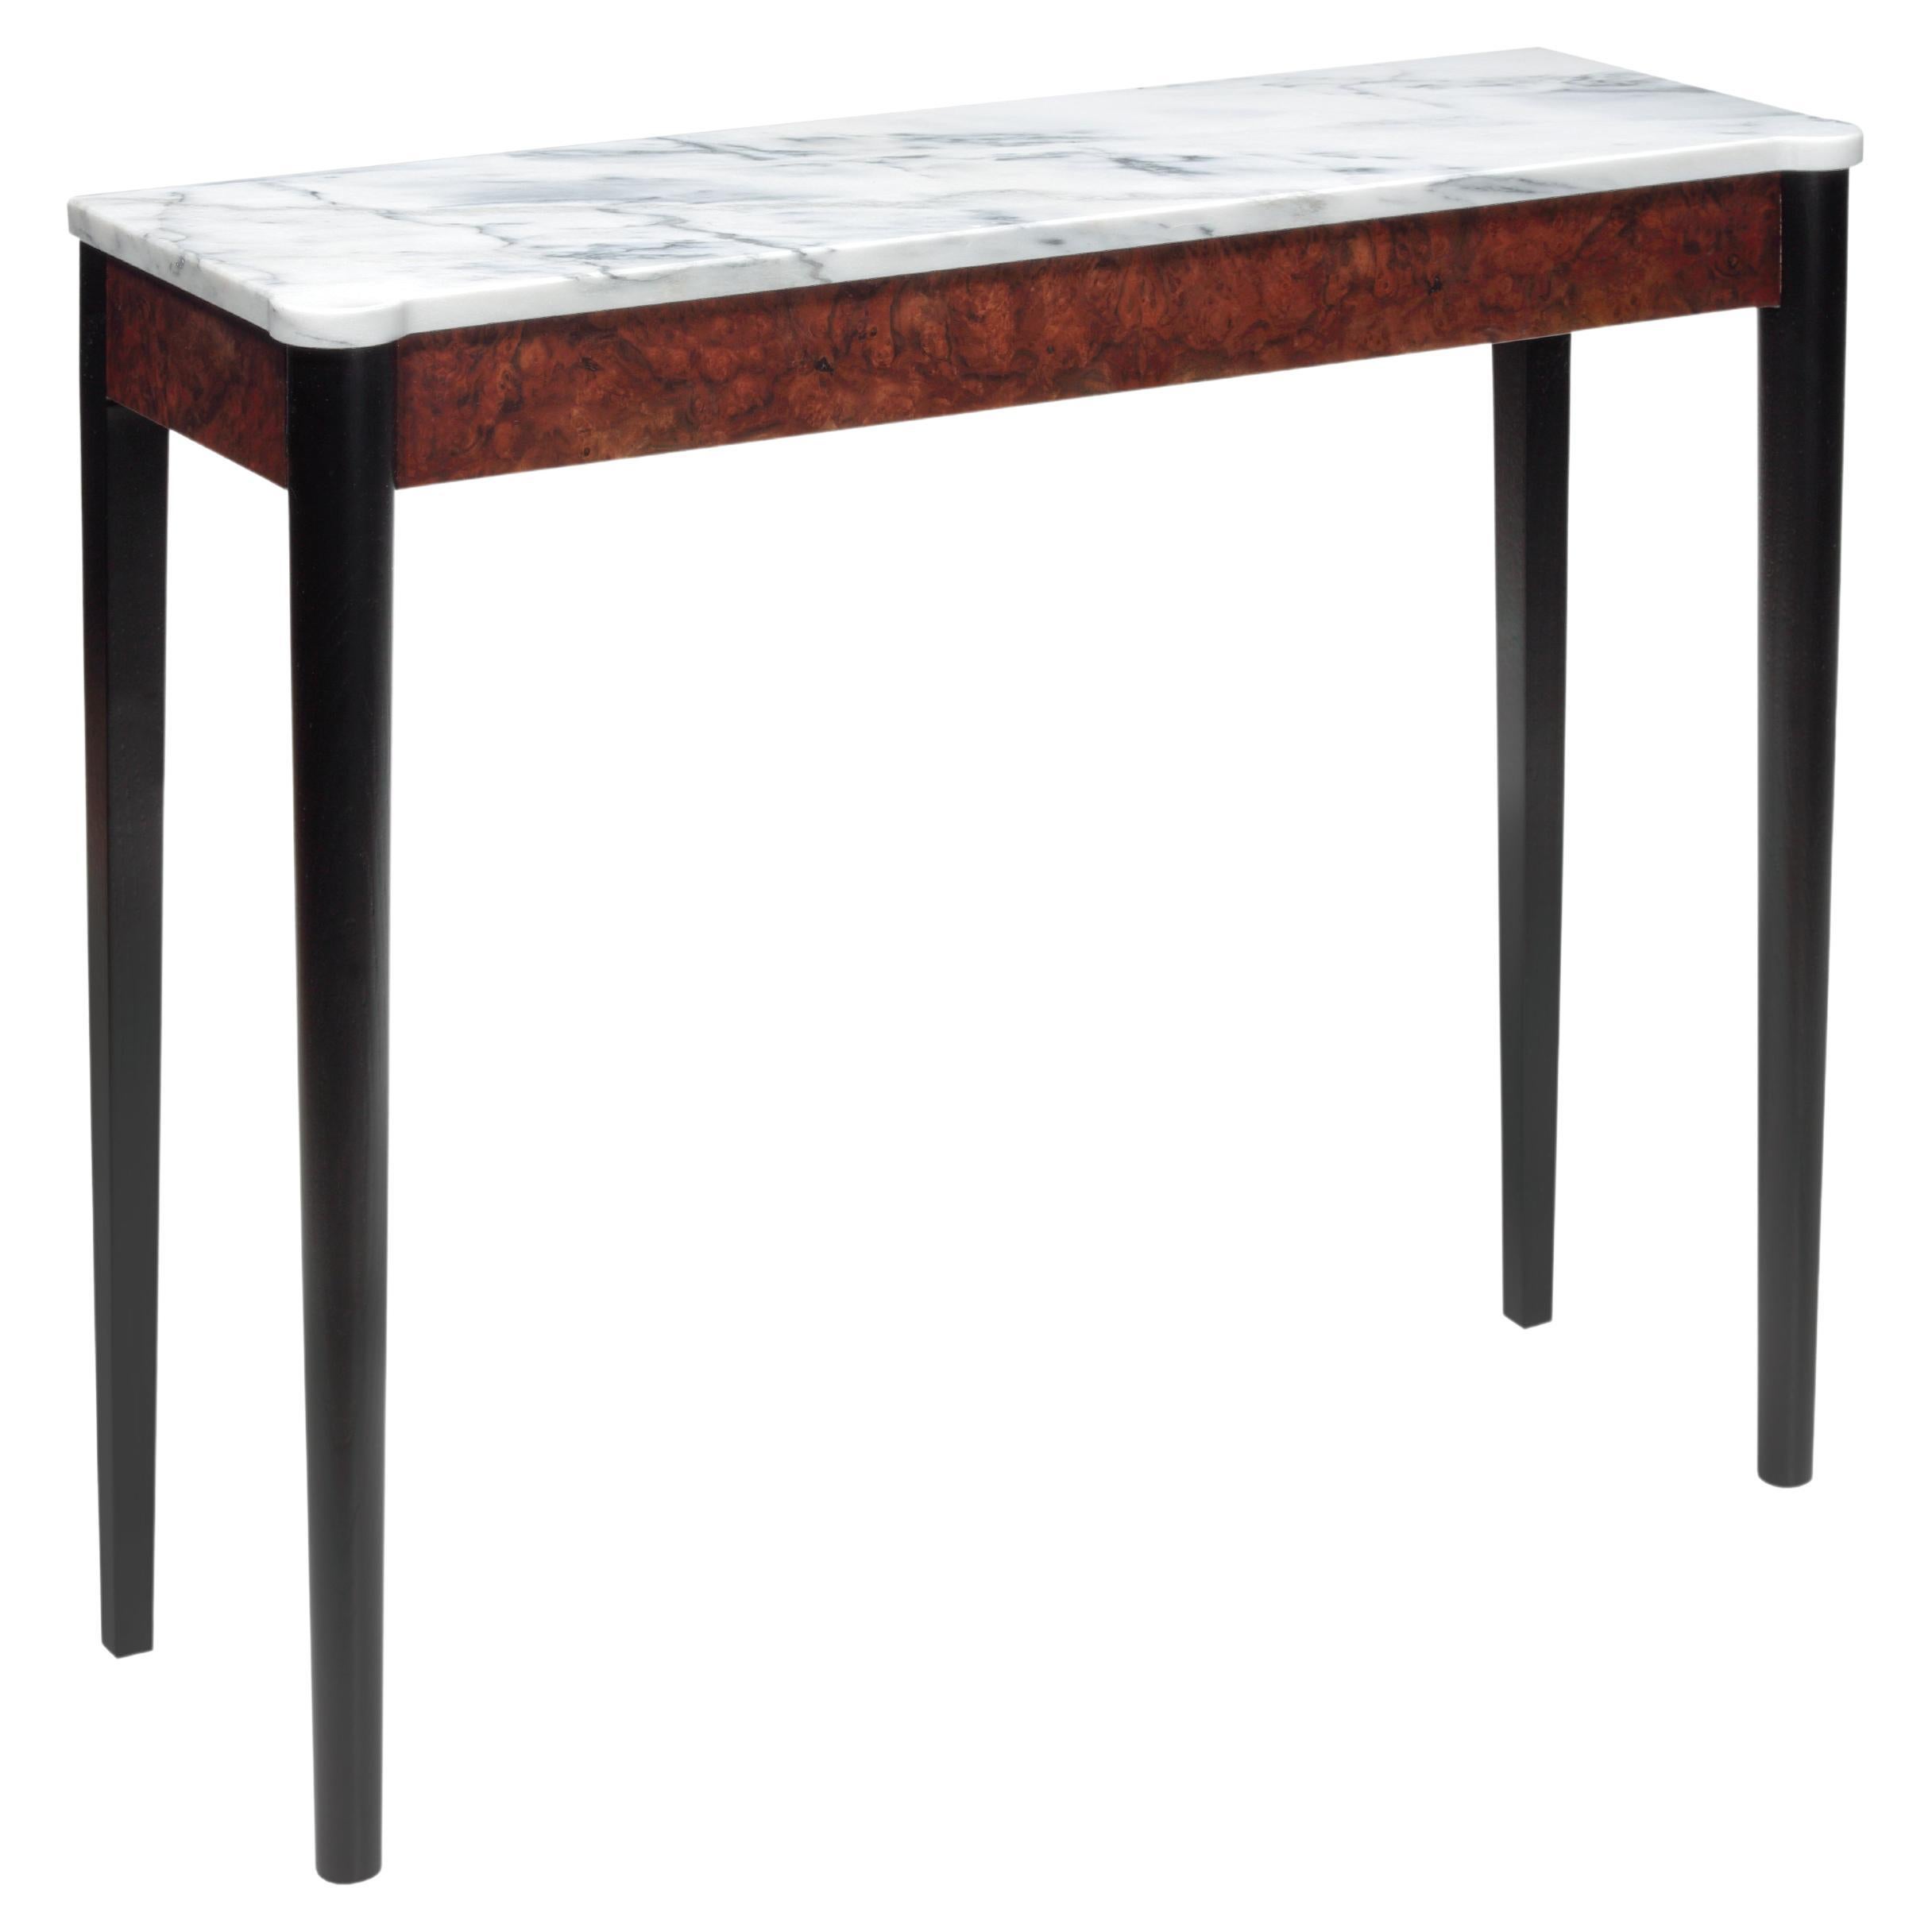 Table console avec plateau en marbre façonné et structure en ronce de noyer